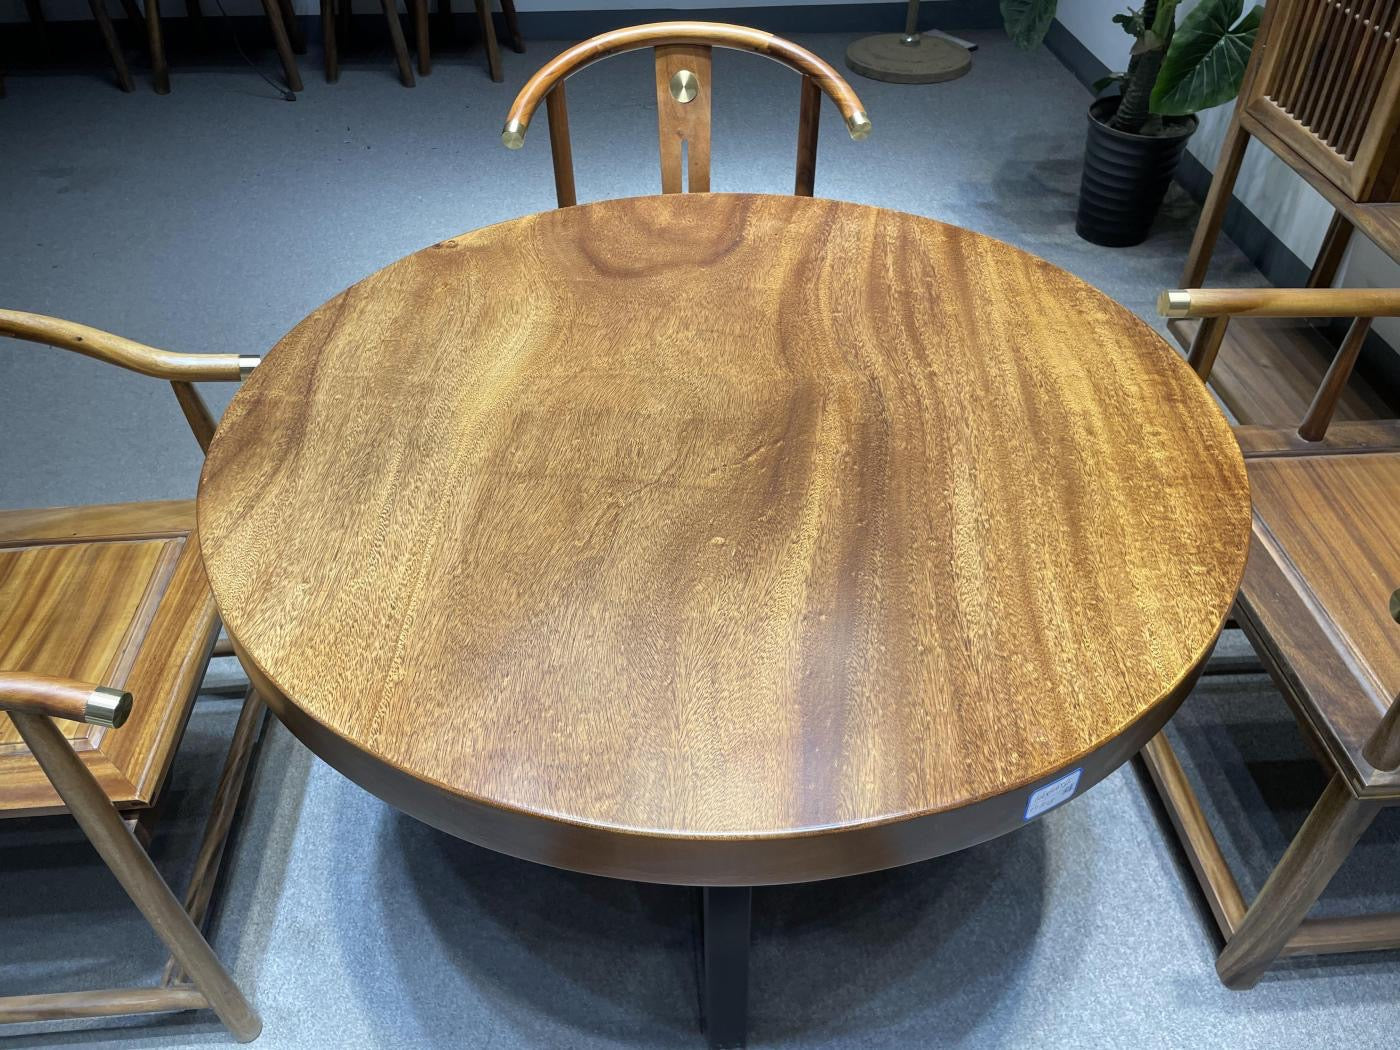 Runder Esstisch aus Holz, runder Couchtisch aus Holz, runder Tisch aus Holz